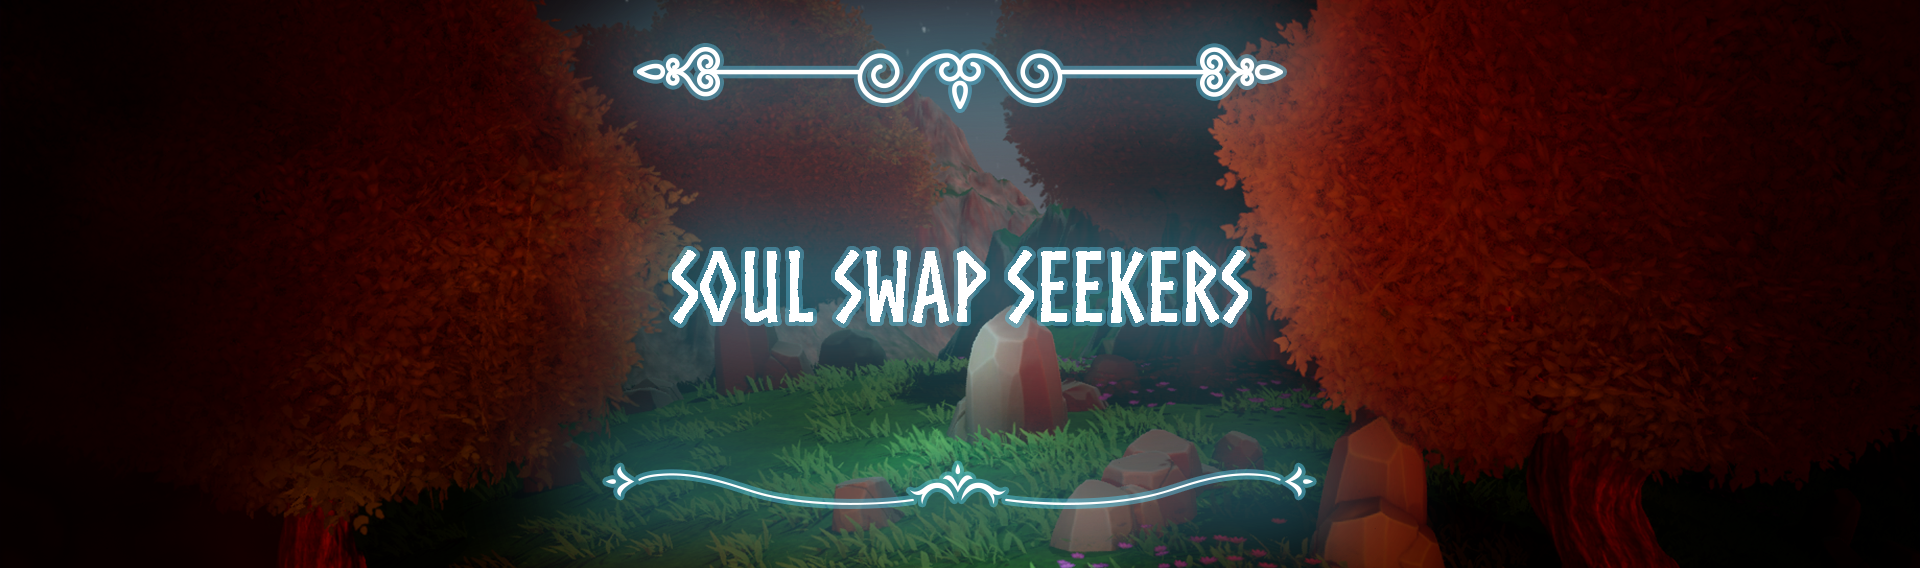 Soul Swap Seekers